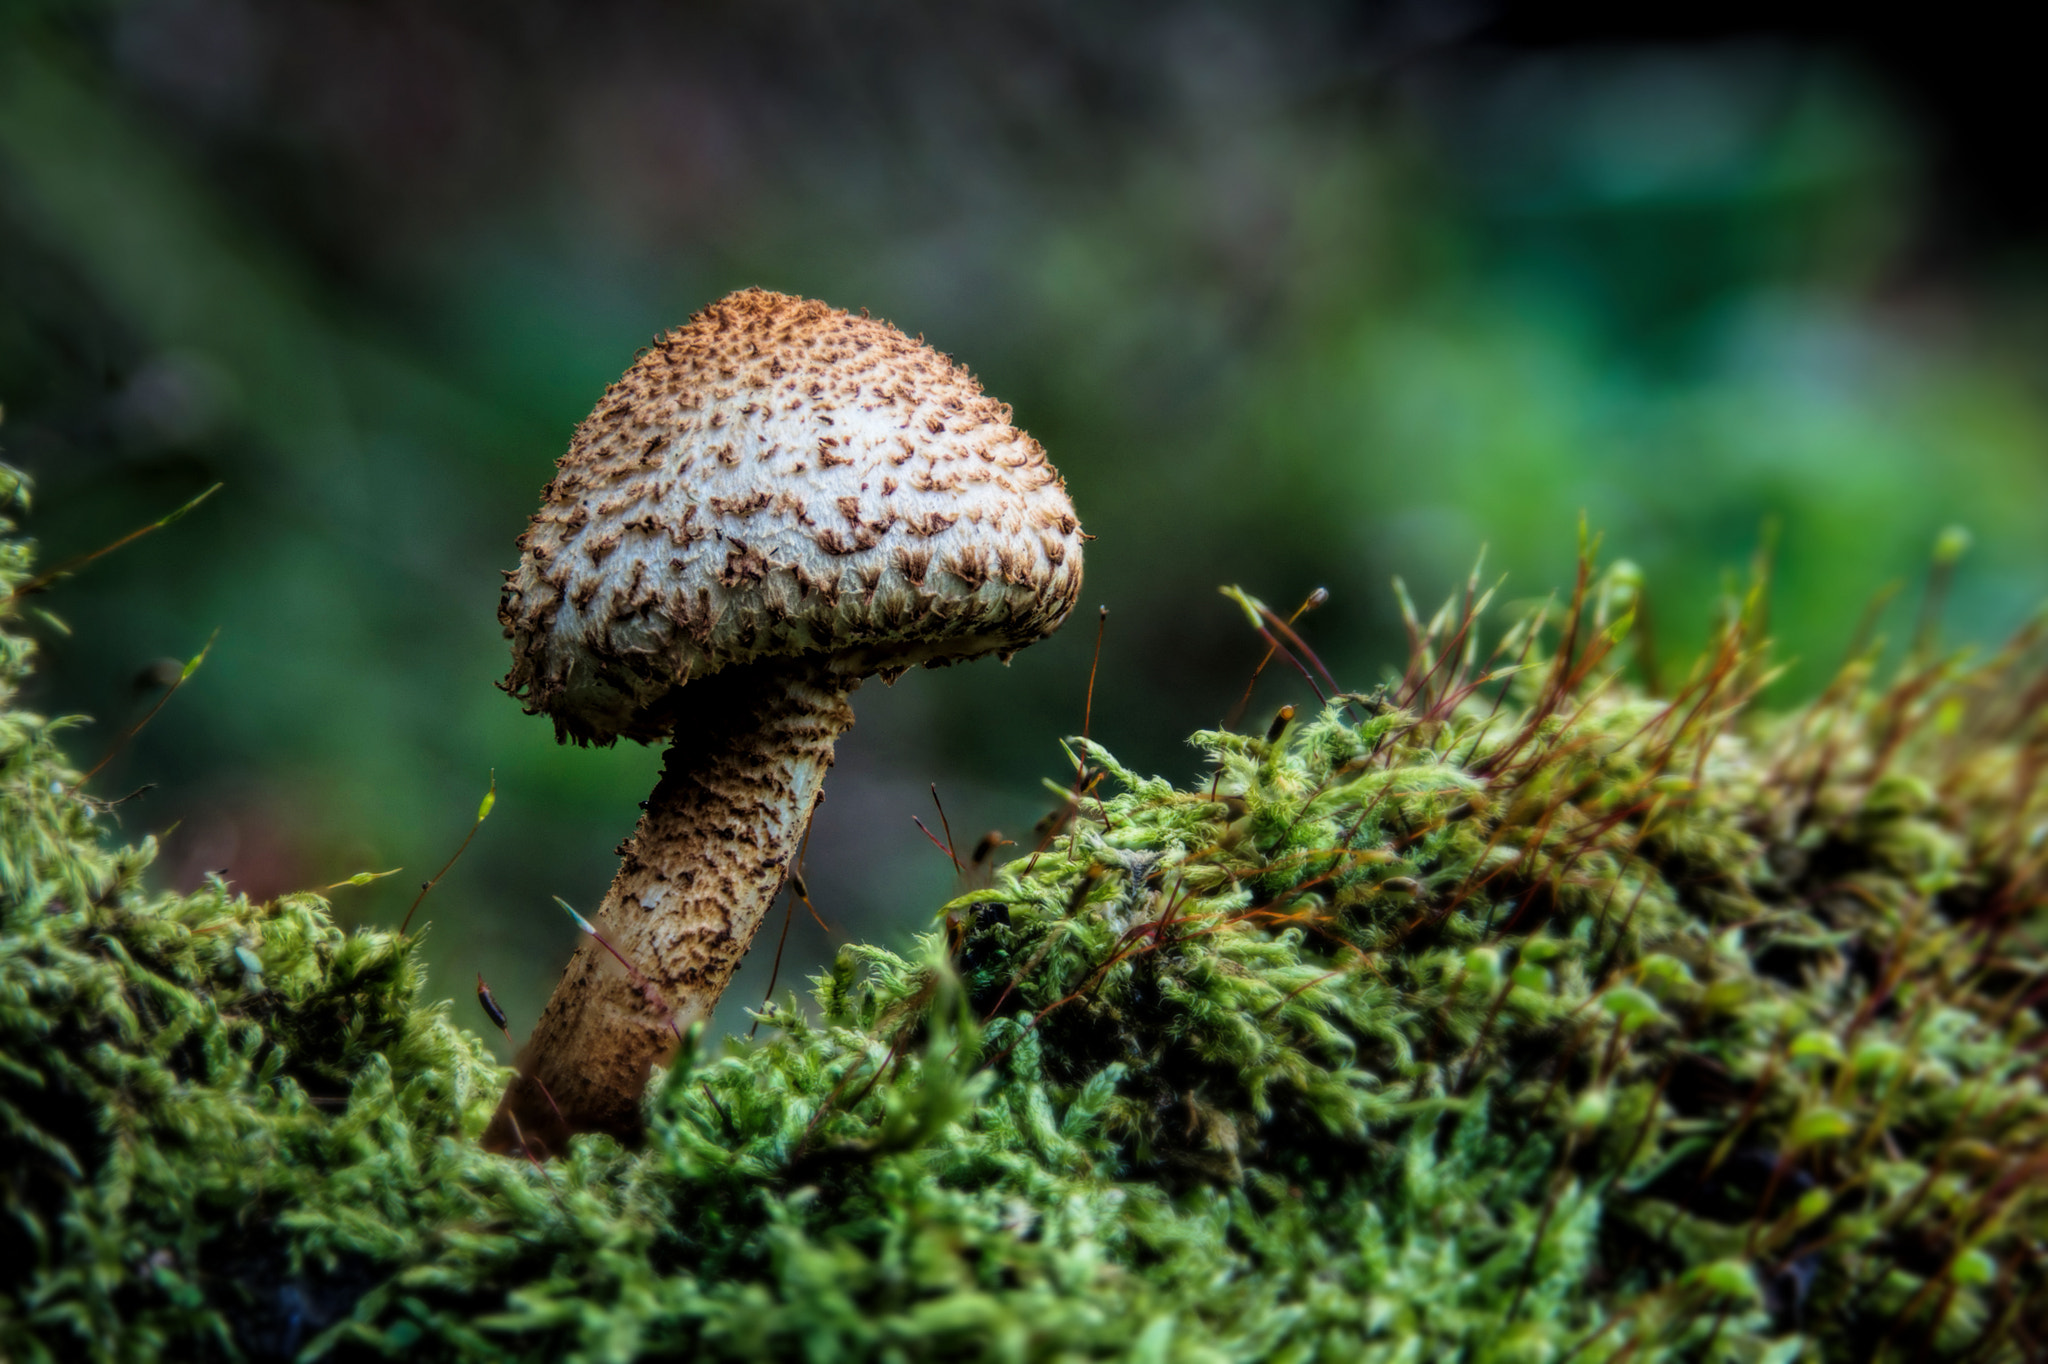 Nikon D600 sample photo. Garden fungi iii photography